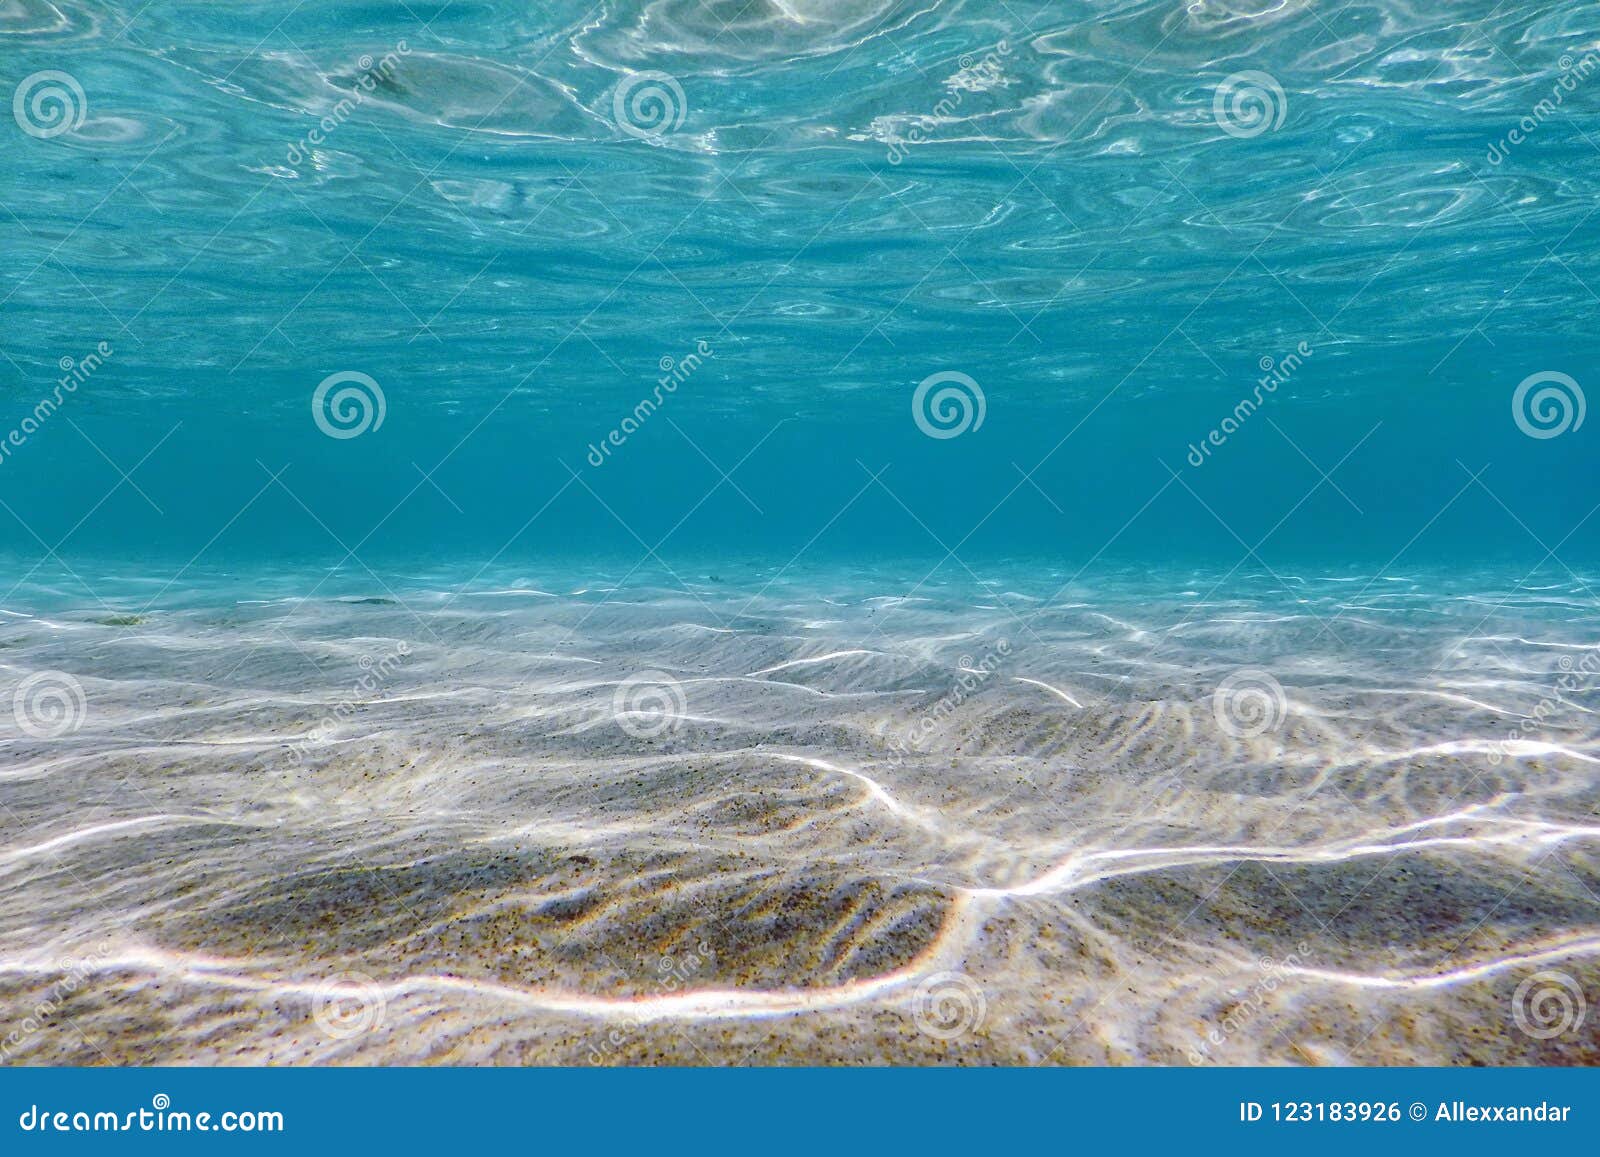 sandy sea bottom underwater background